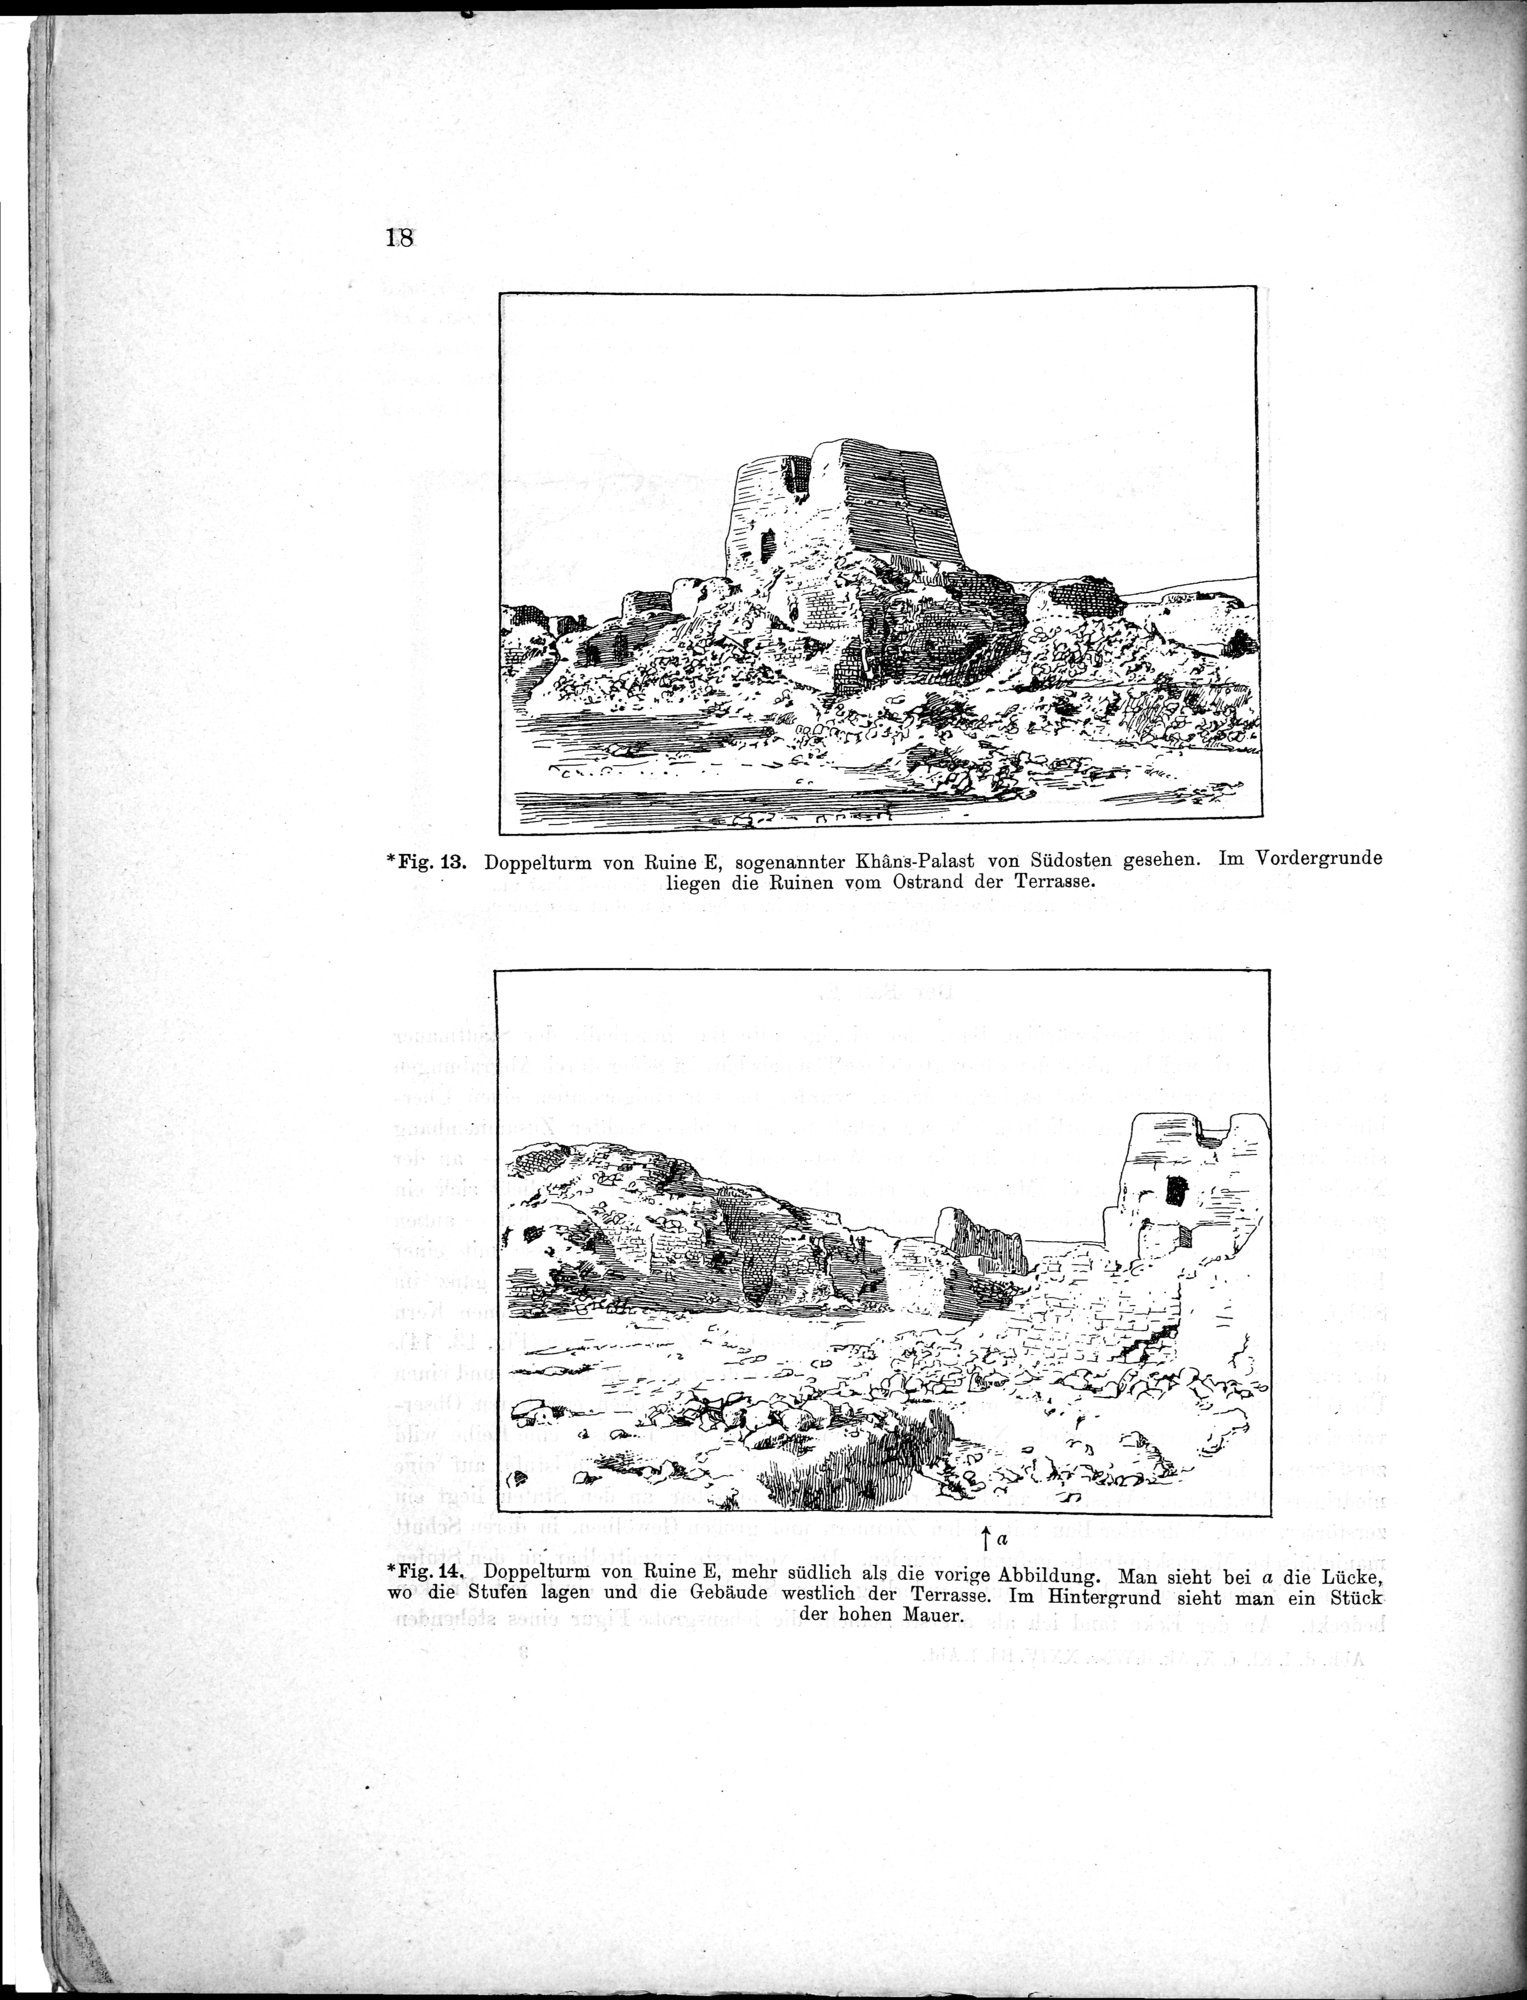 Bericht über archäologische Arbeiten in Idikutschari und Umgebung im Winter 1902-1903 : vol.1 / Page 28 (Grayscale High Resolution Image)